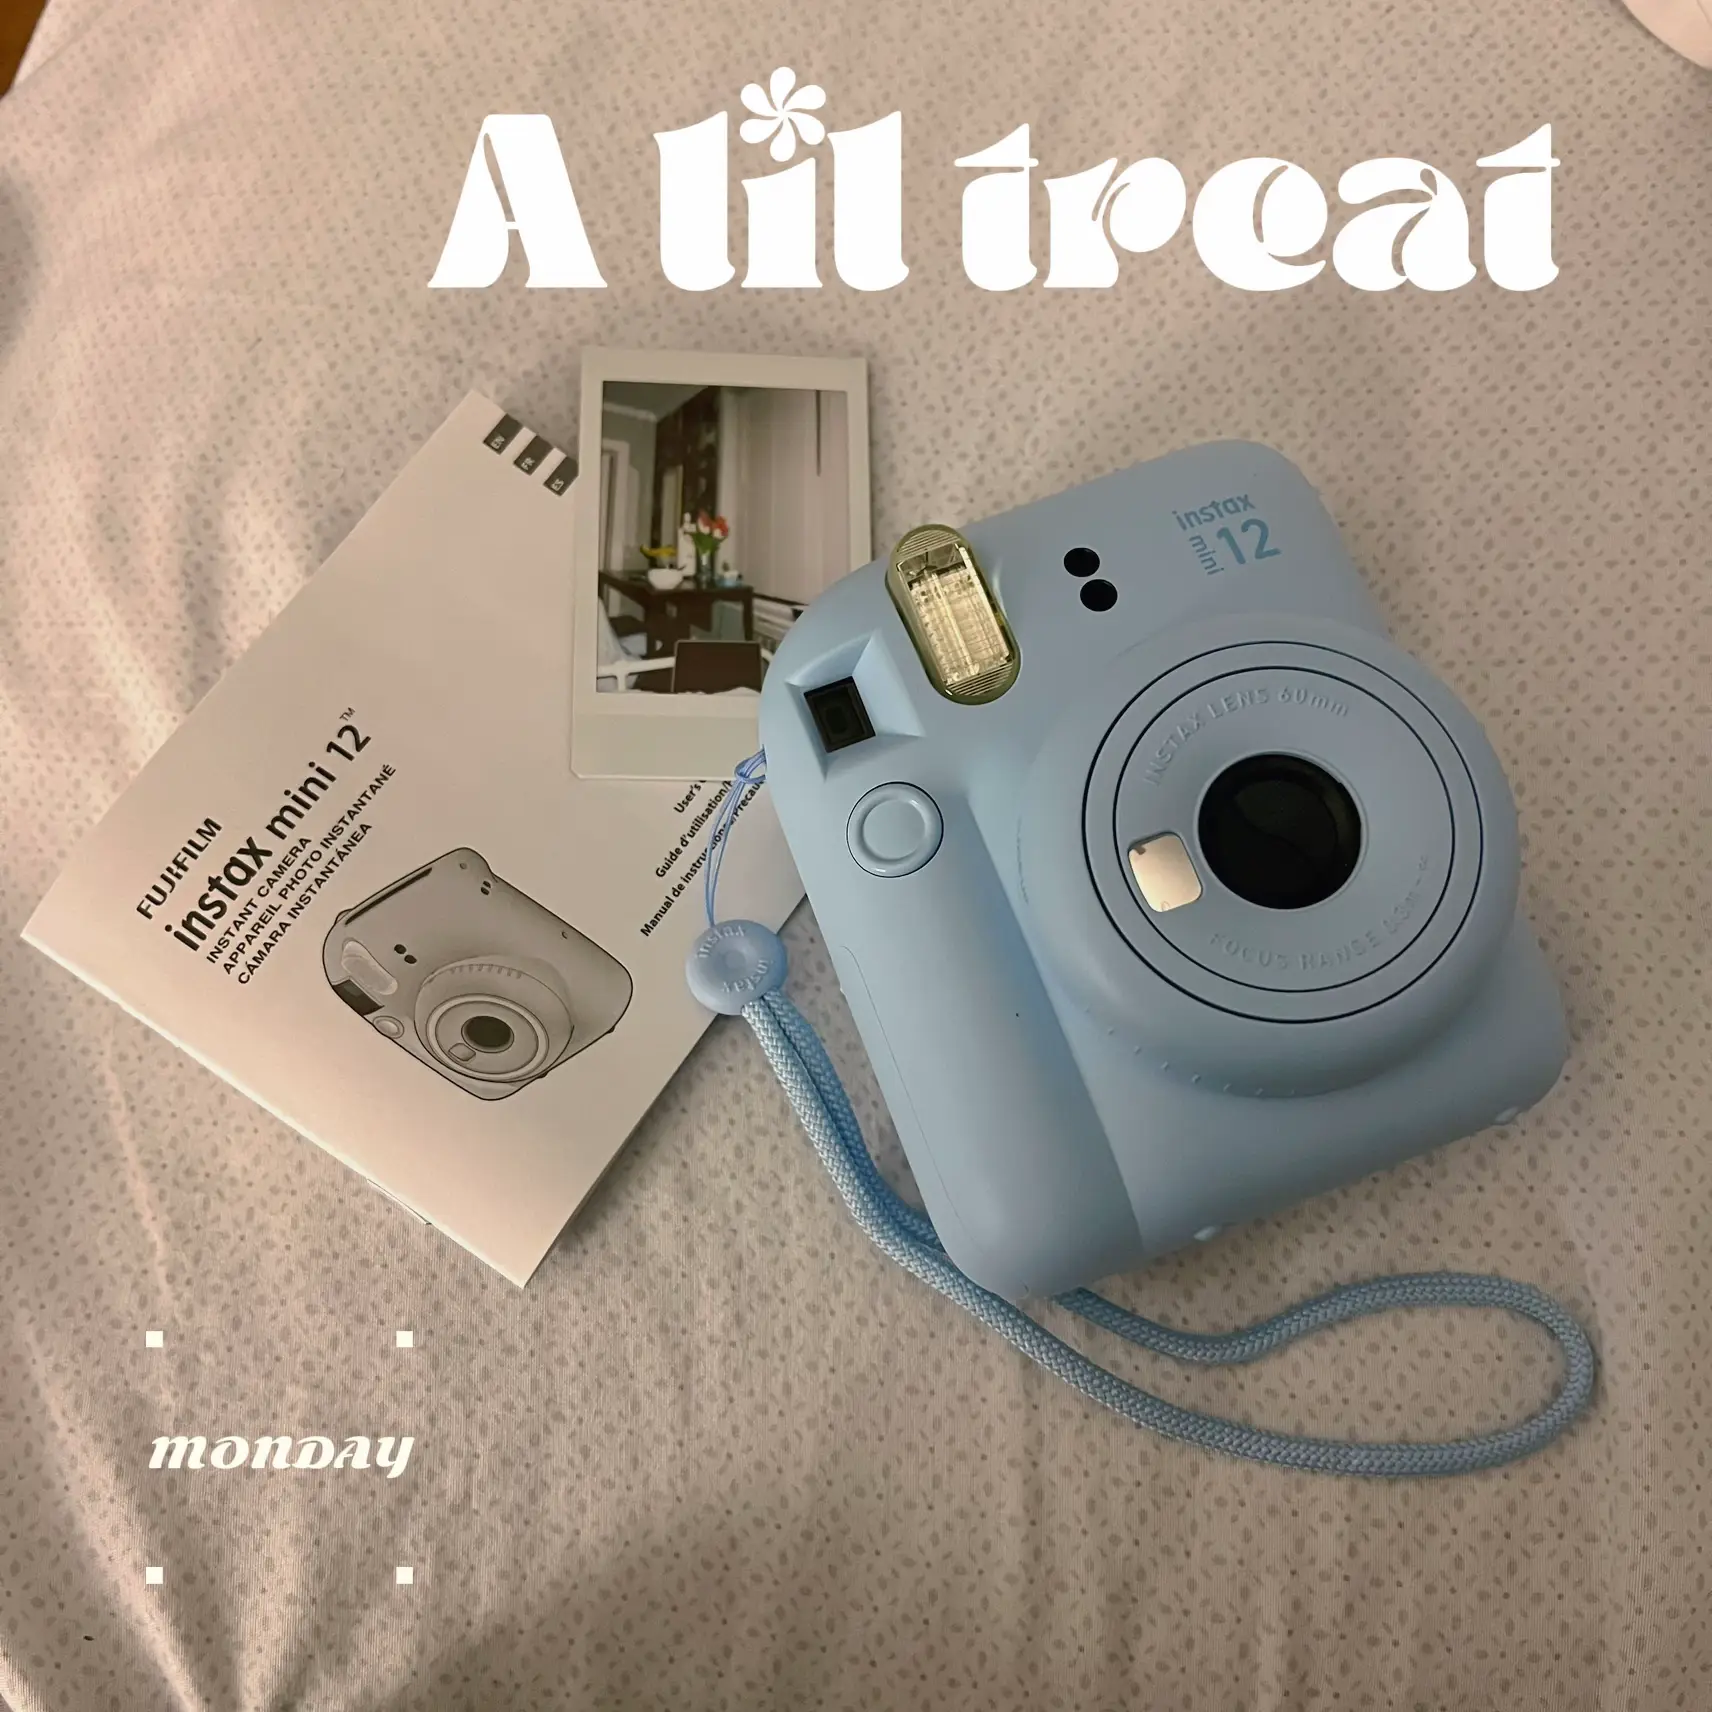 Cámara instantánea Polaroid Go. Curiosite